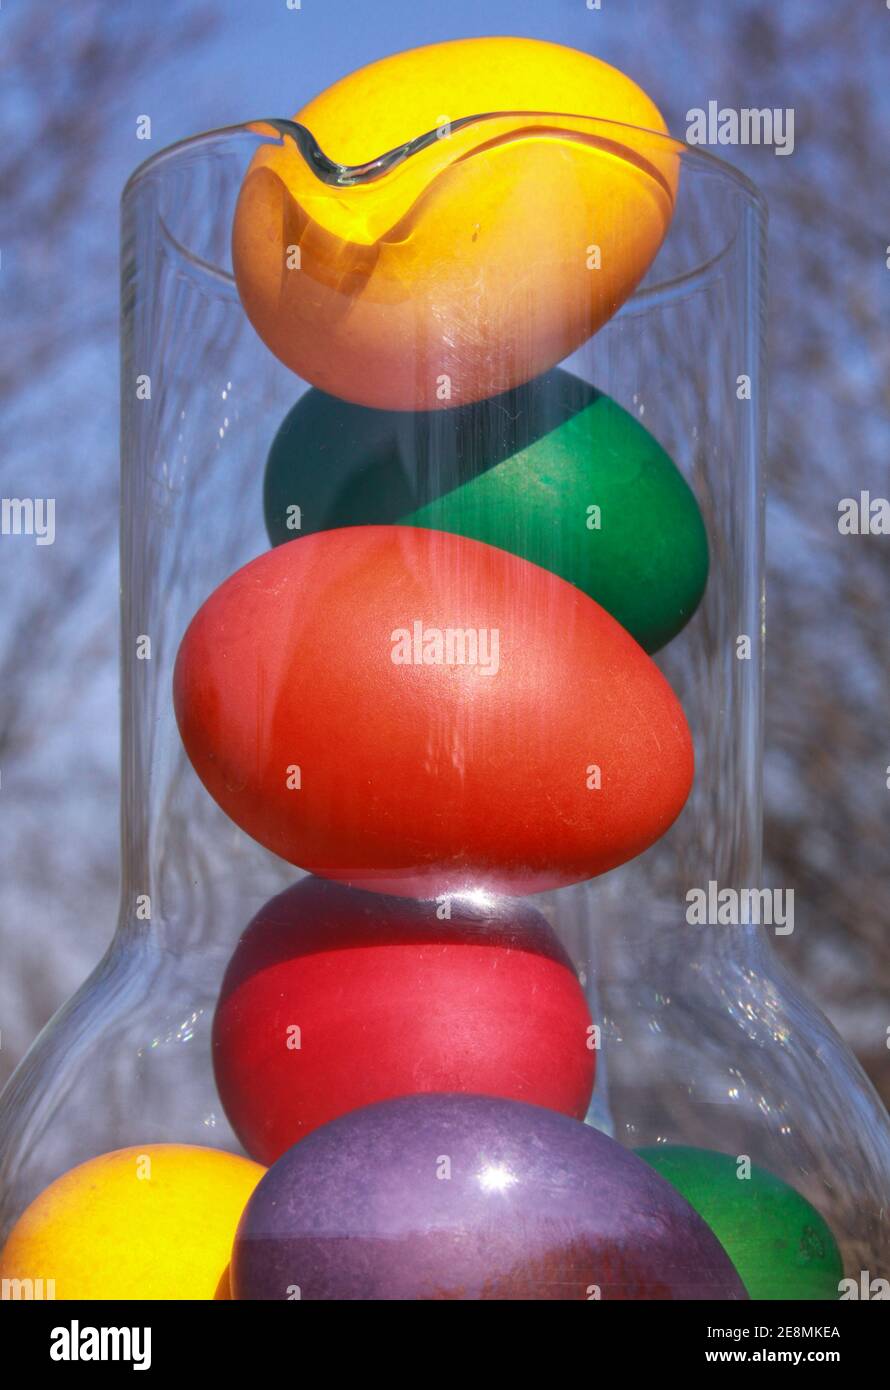 Huevos de Pascua pintados de color en jarrón de vidrio o en la jarra en preparación para las vacaciones. Pintar huevos de pollo o pato es una tradición cristiana para celebrar EA Foto de stock